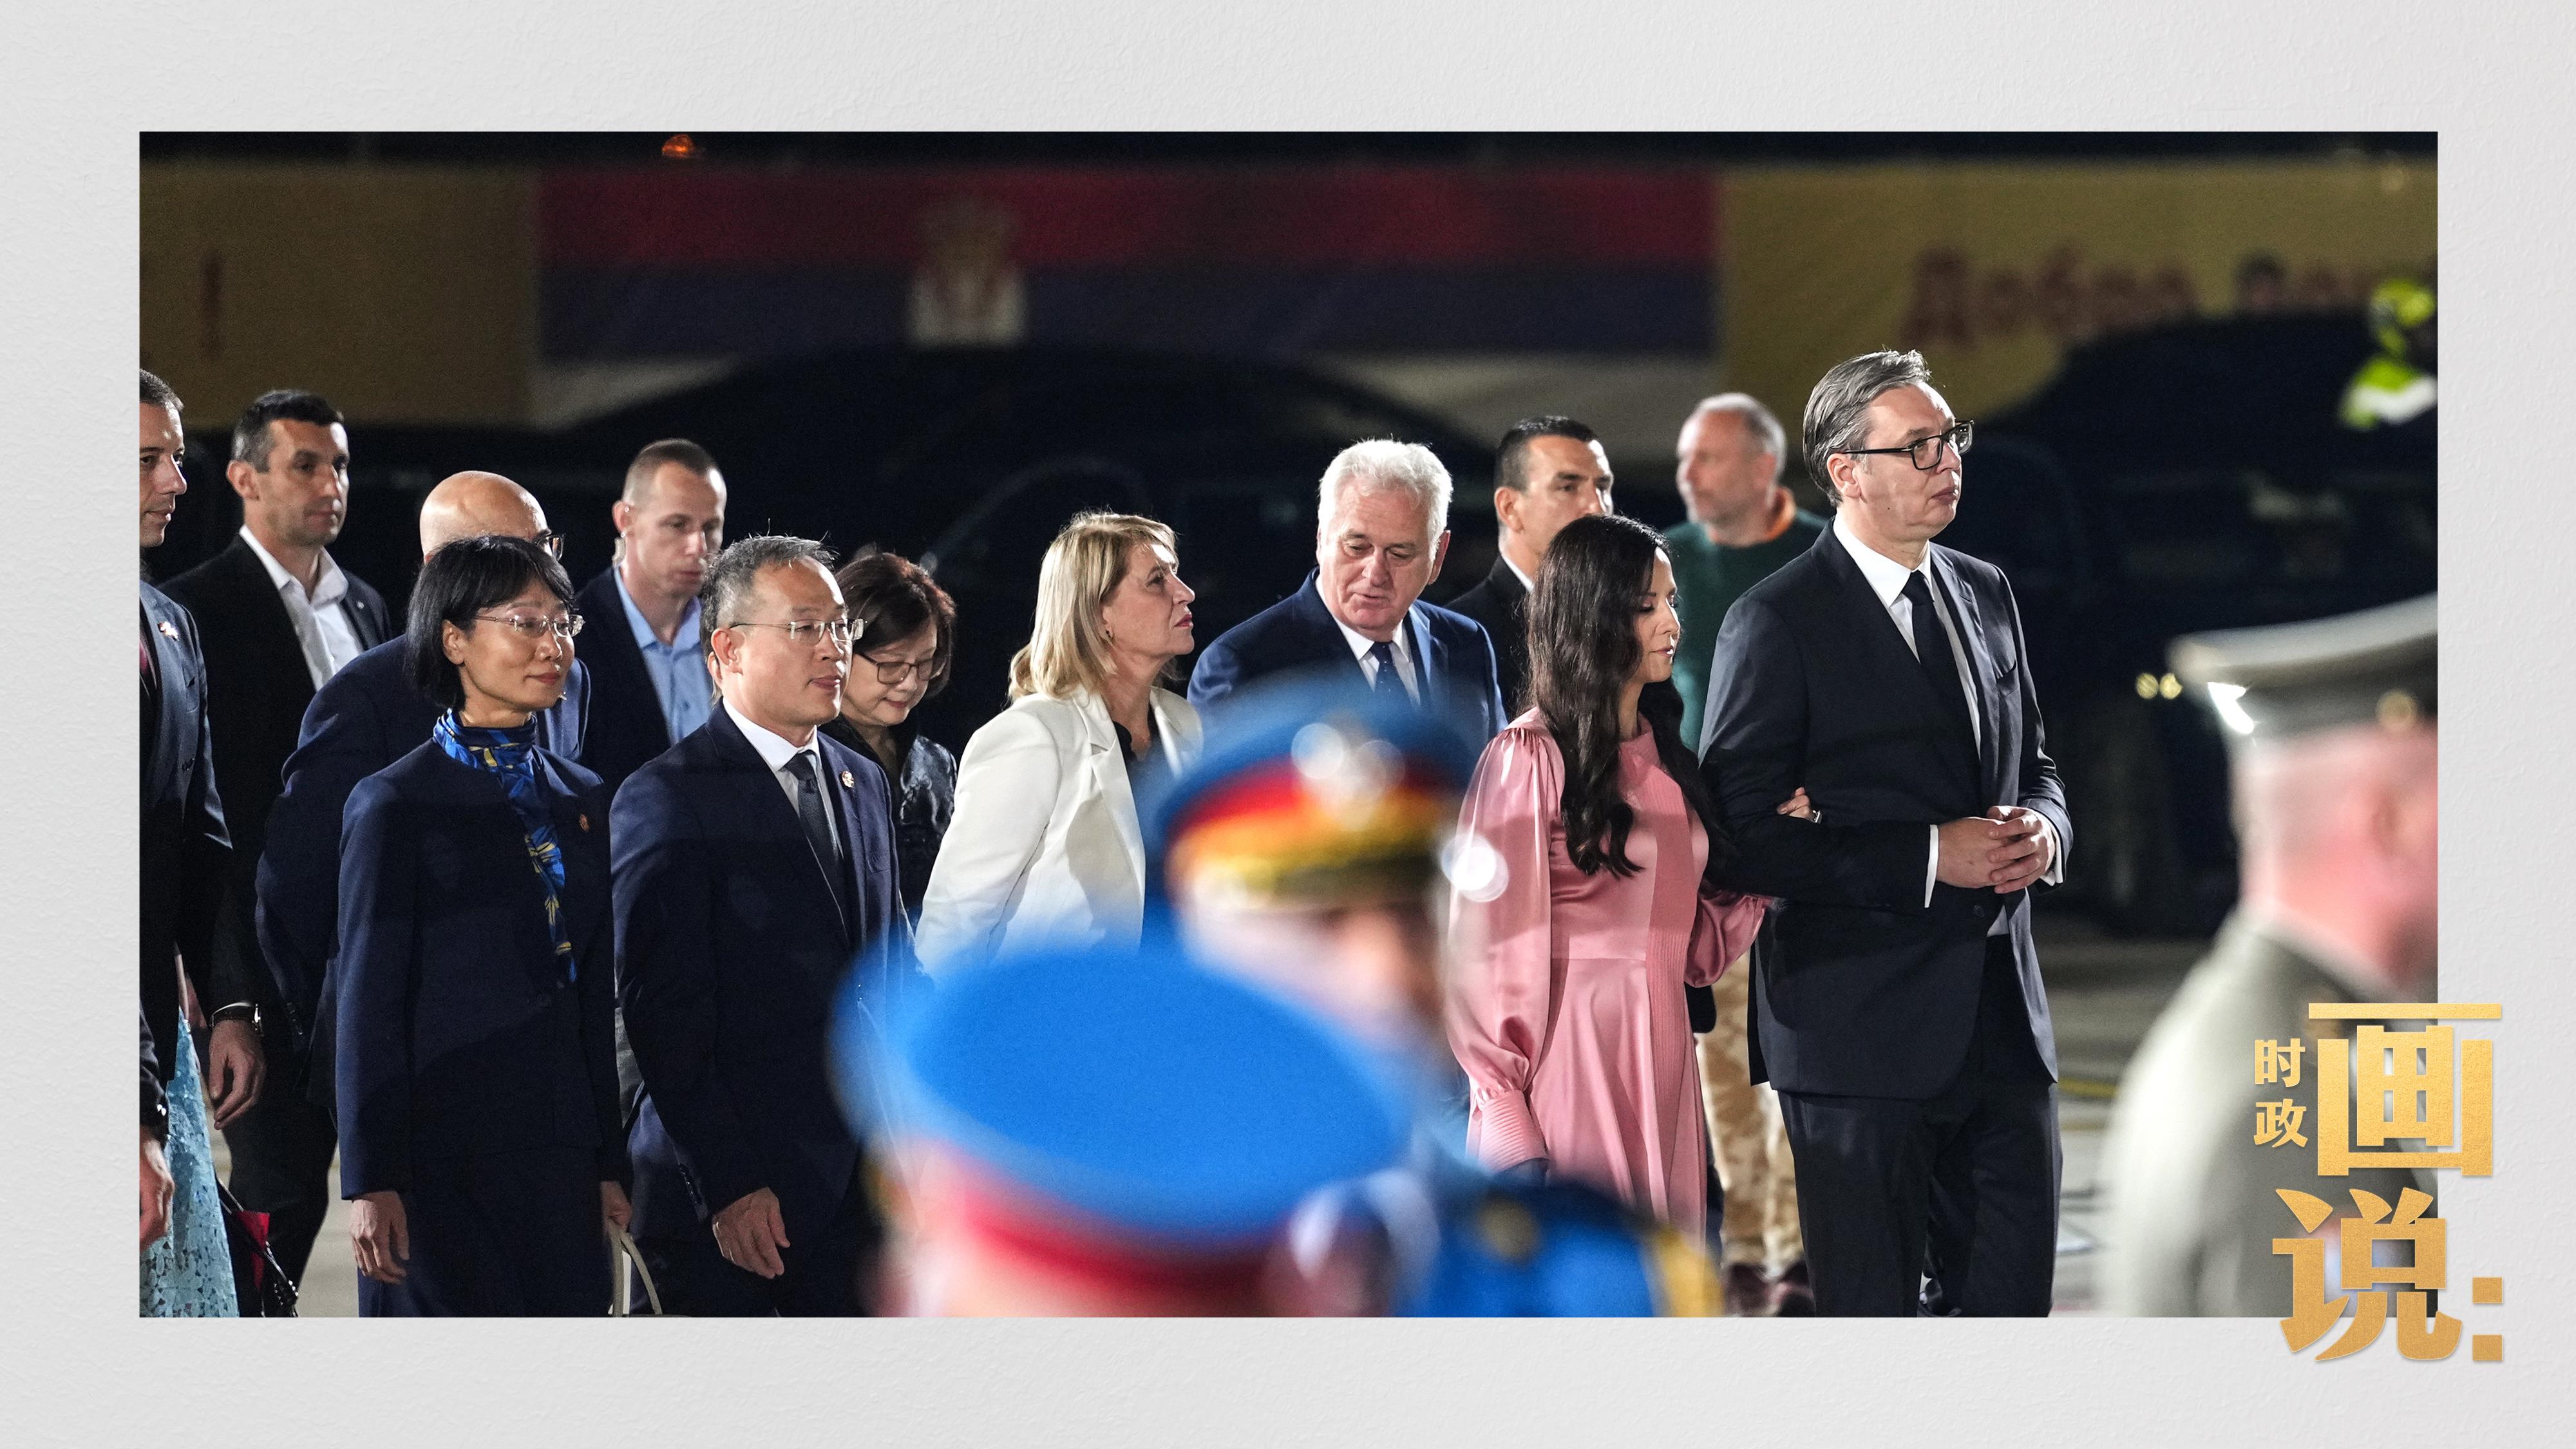 当地时间5月7日晚，国家主席习近平和夫人彭丽媛乘专机抵达贝尔格莱德。塞尔维亚总统武契奇夫妇、前总统尼科利奇夫妇、议长布尔纳比奇、总理武切维奇等在机场热情迎接。